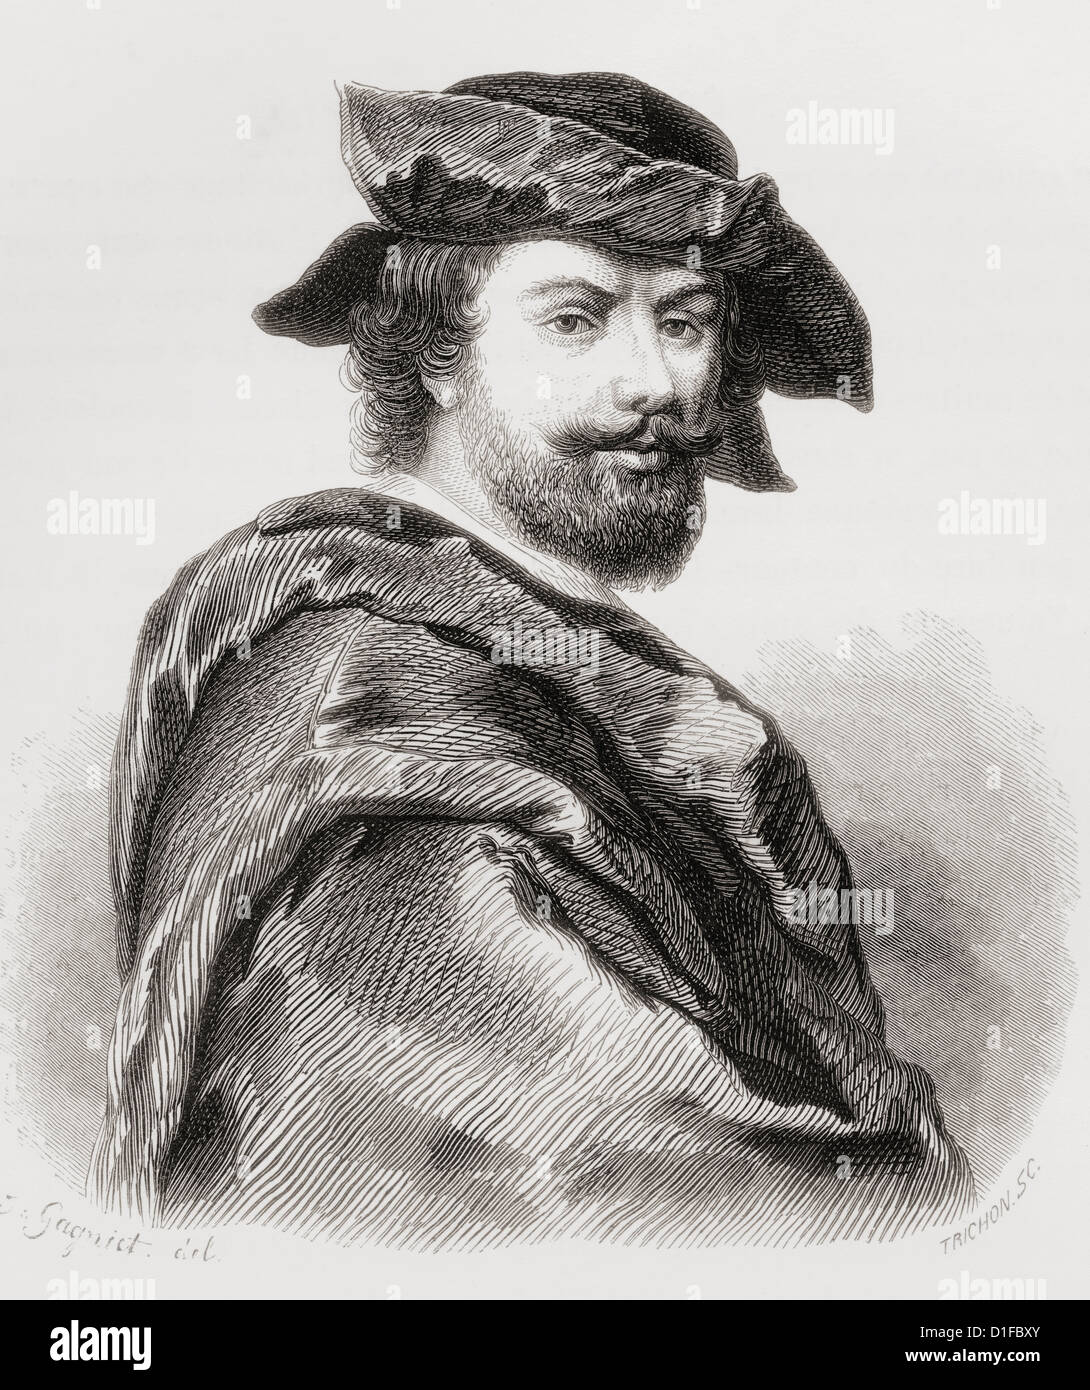 Cristofano Allori, 1577 - 1621. El artista italiano. Foto de stock